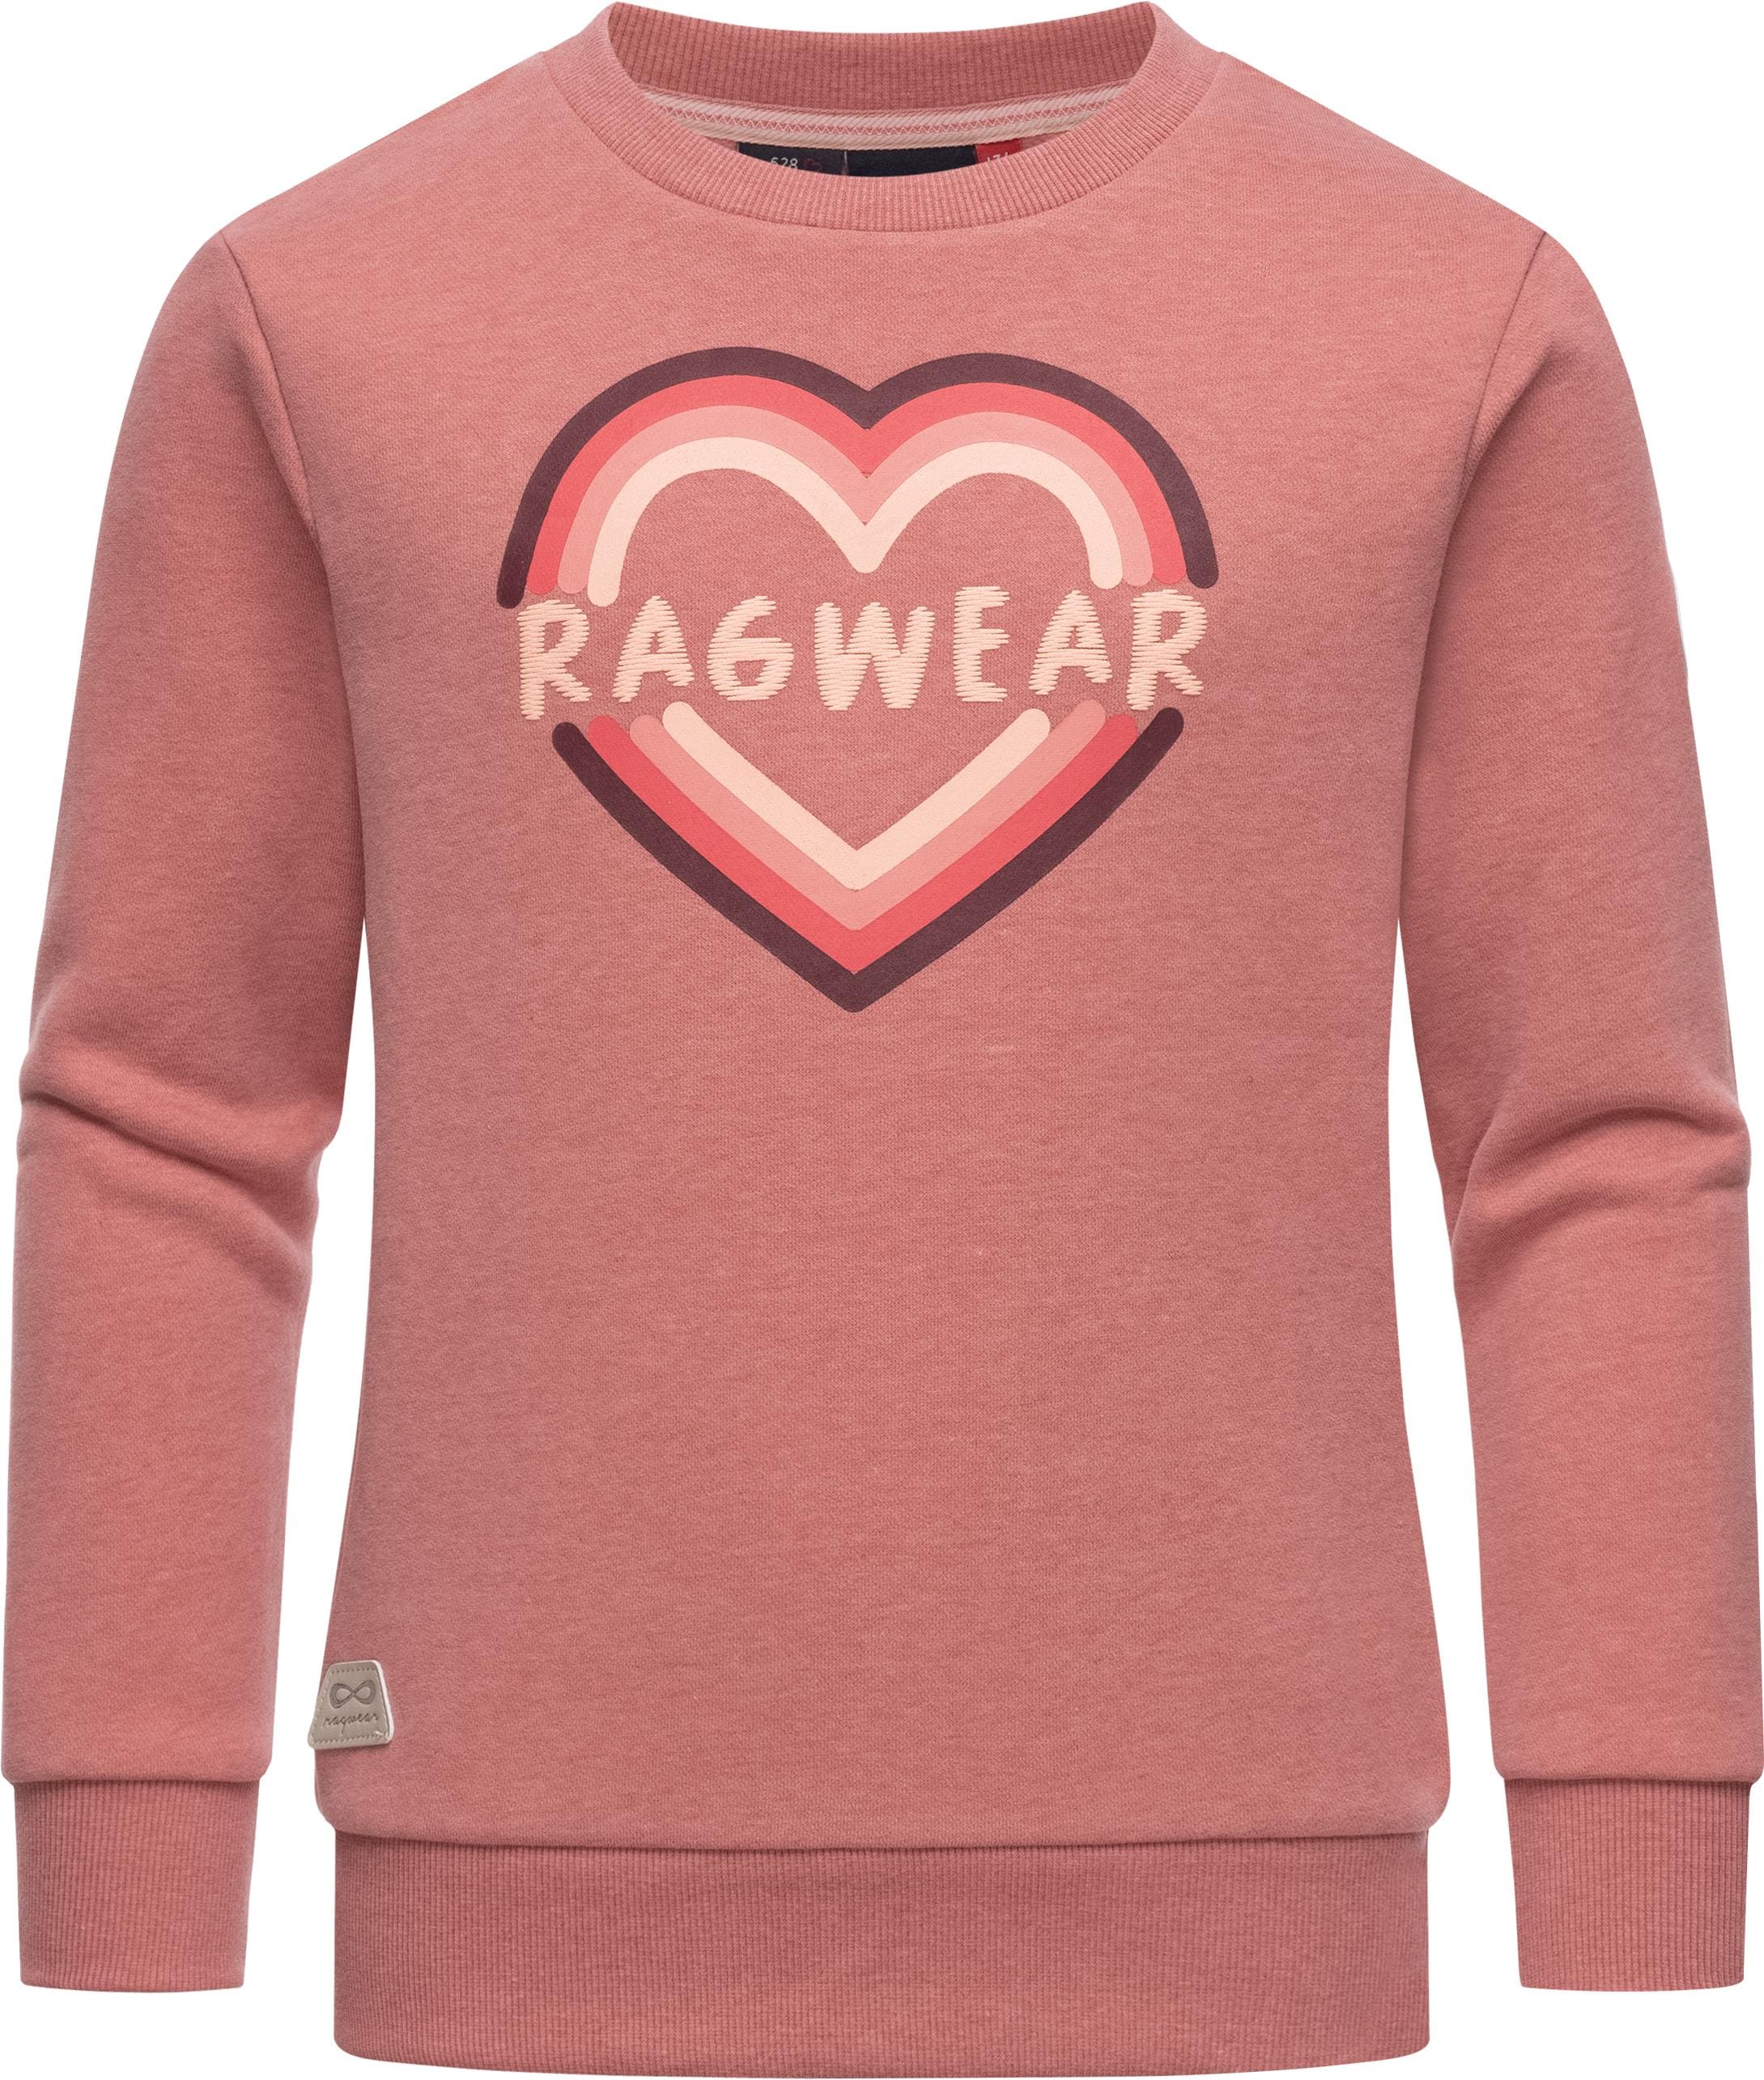 Print Ragwear mit BAUR Print«, Sweatshirt coolem stylisches Sweater Logo Mädchen online kaufen »Evka |